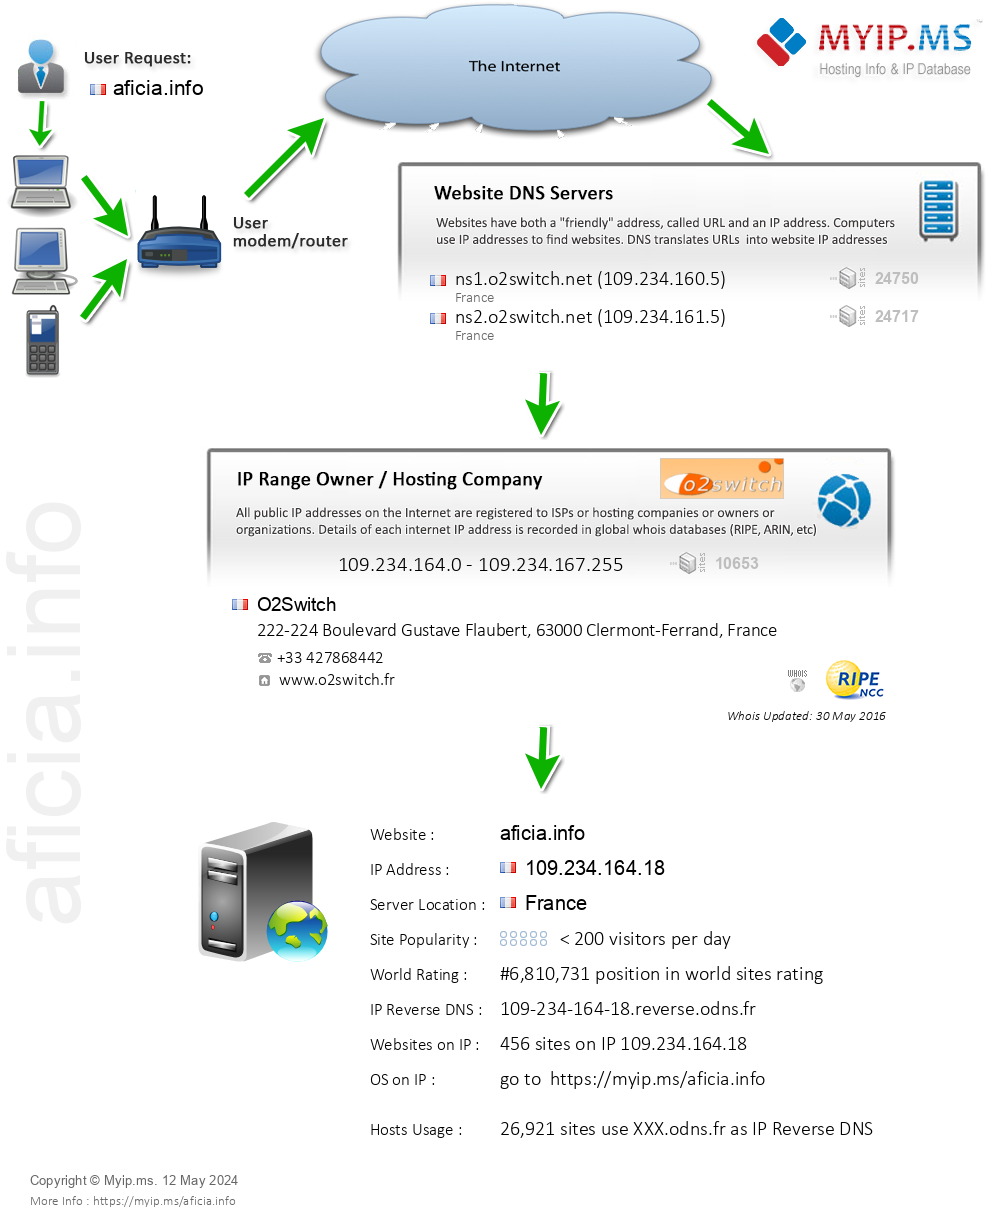 Aficia.info - Website Hosting Visual IP Diagram